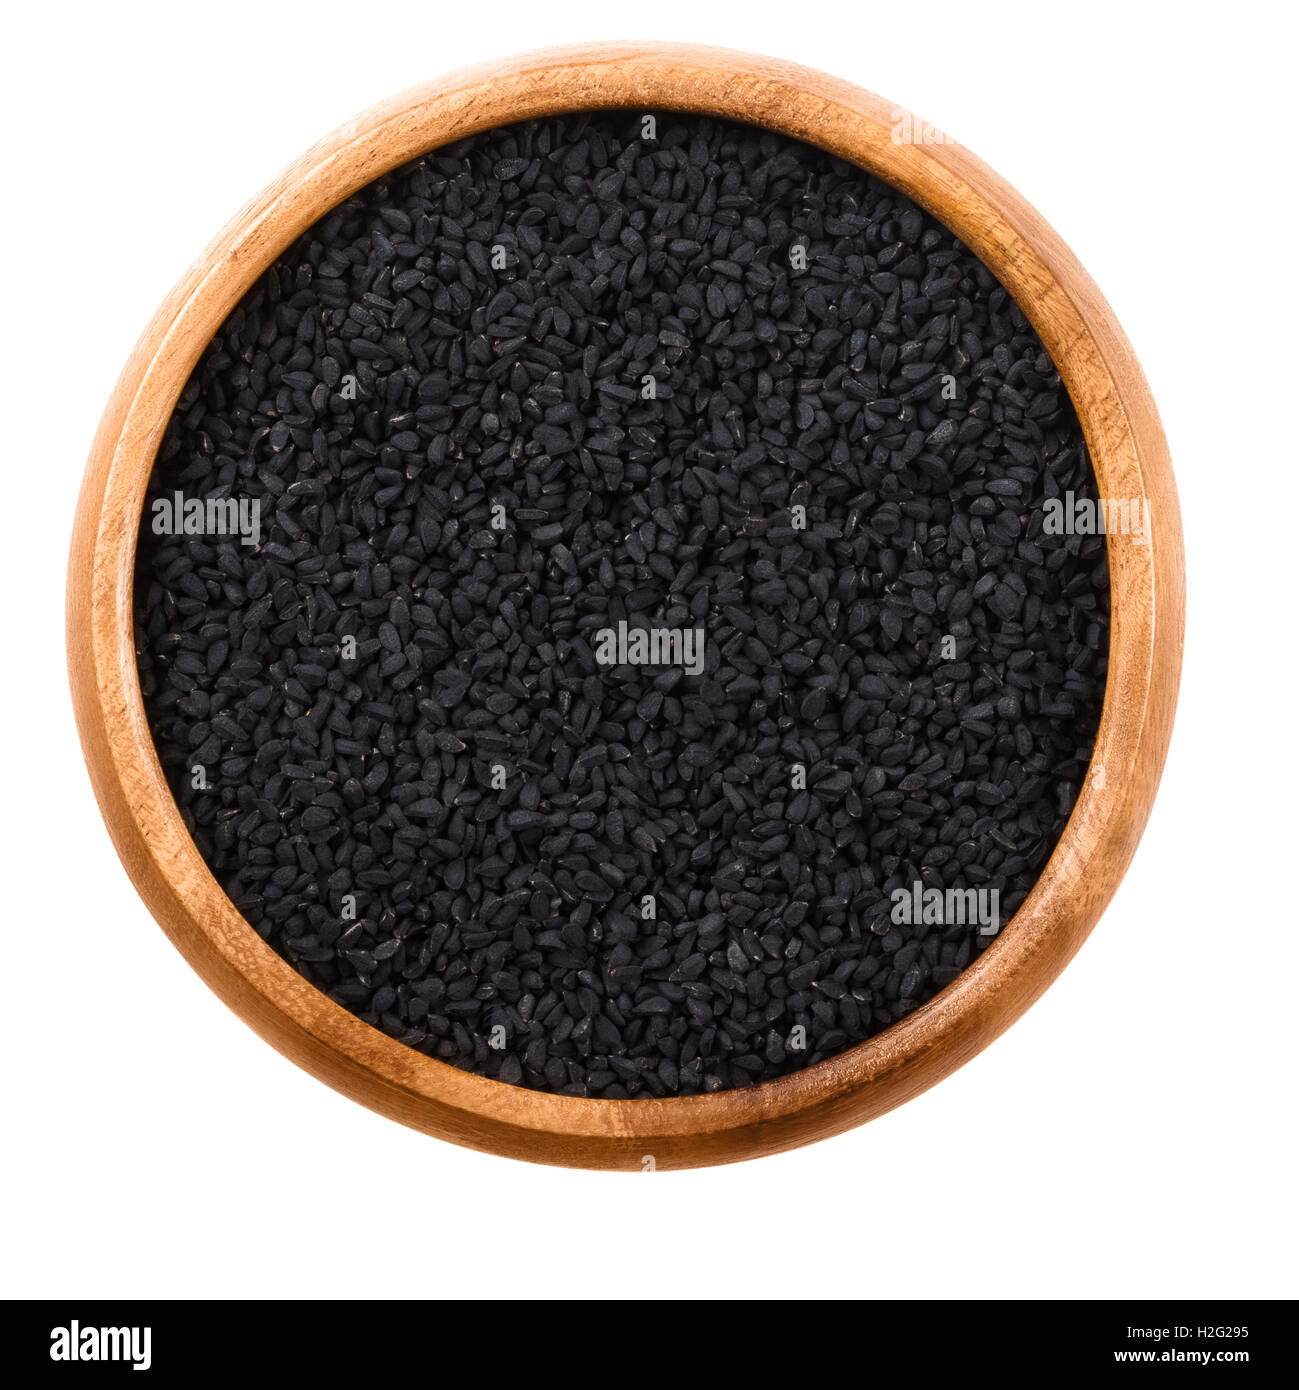 Les graines de cumin noir dans le bol en bois sur fond blanc. Les fruits séchés de Nigella Sativa cumin noir, également, nigella ou kalonji. Banque D'Images